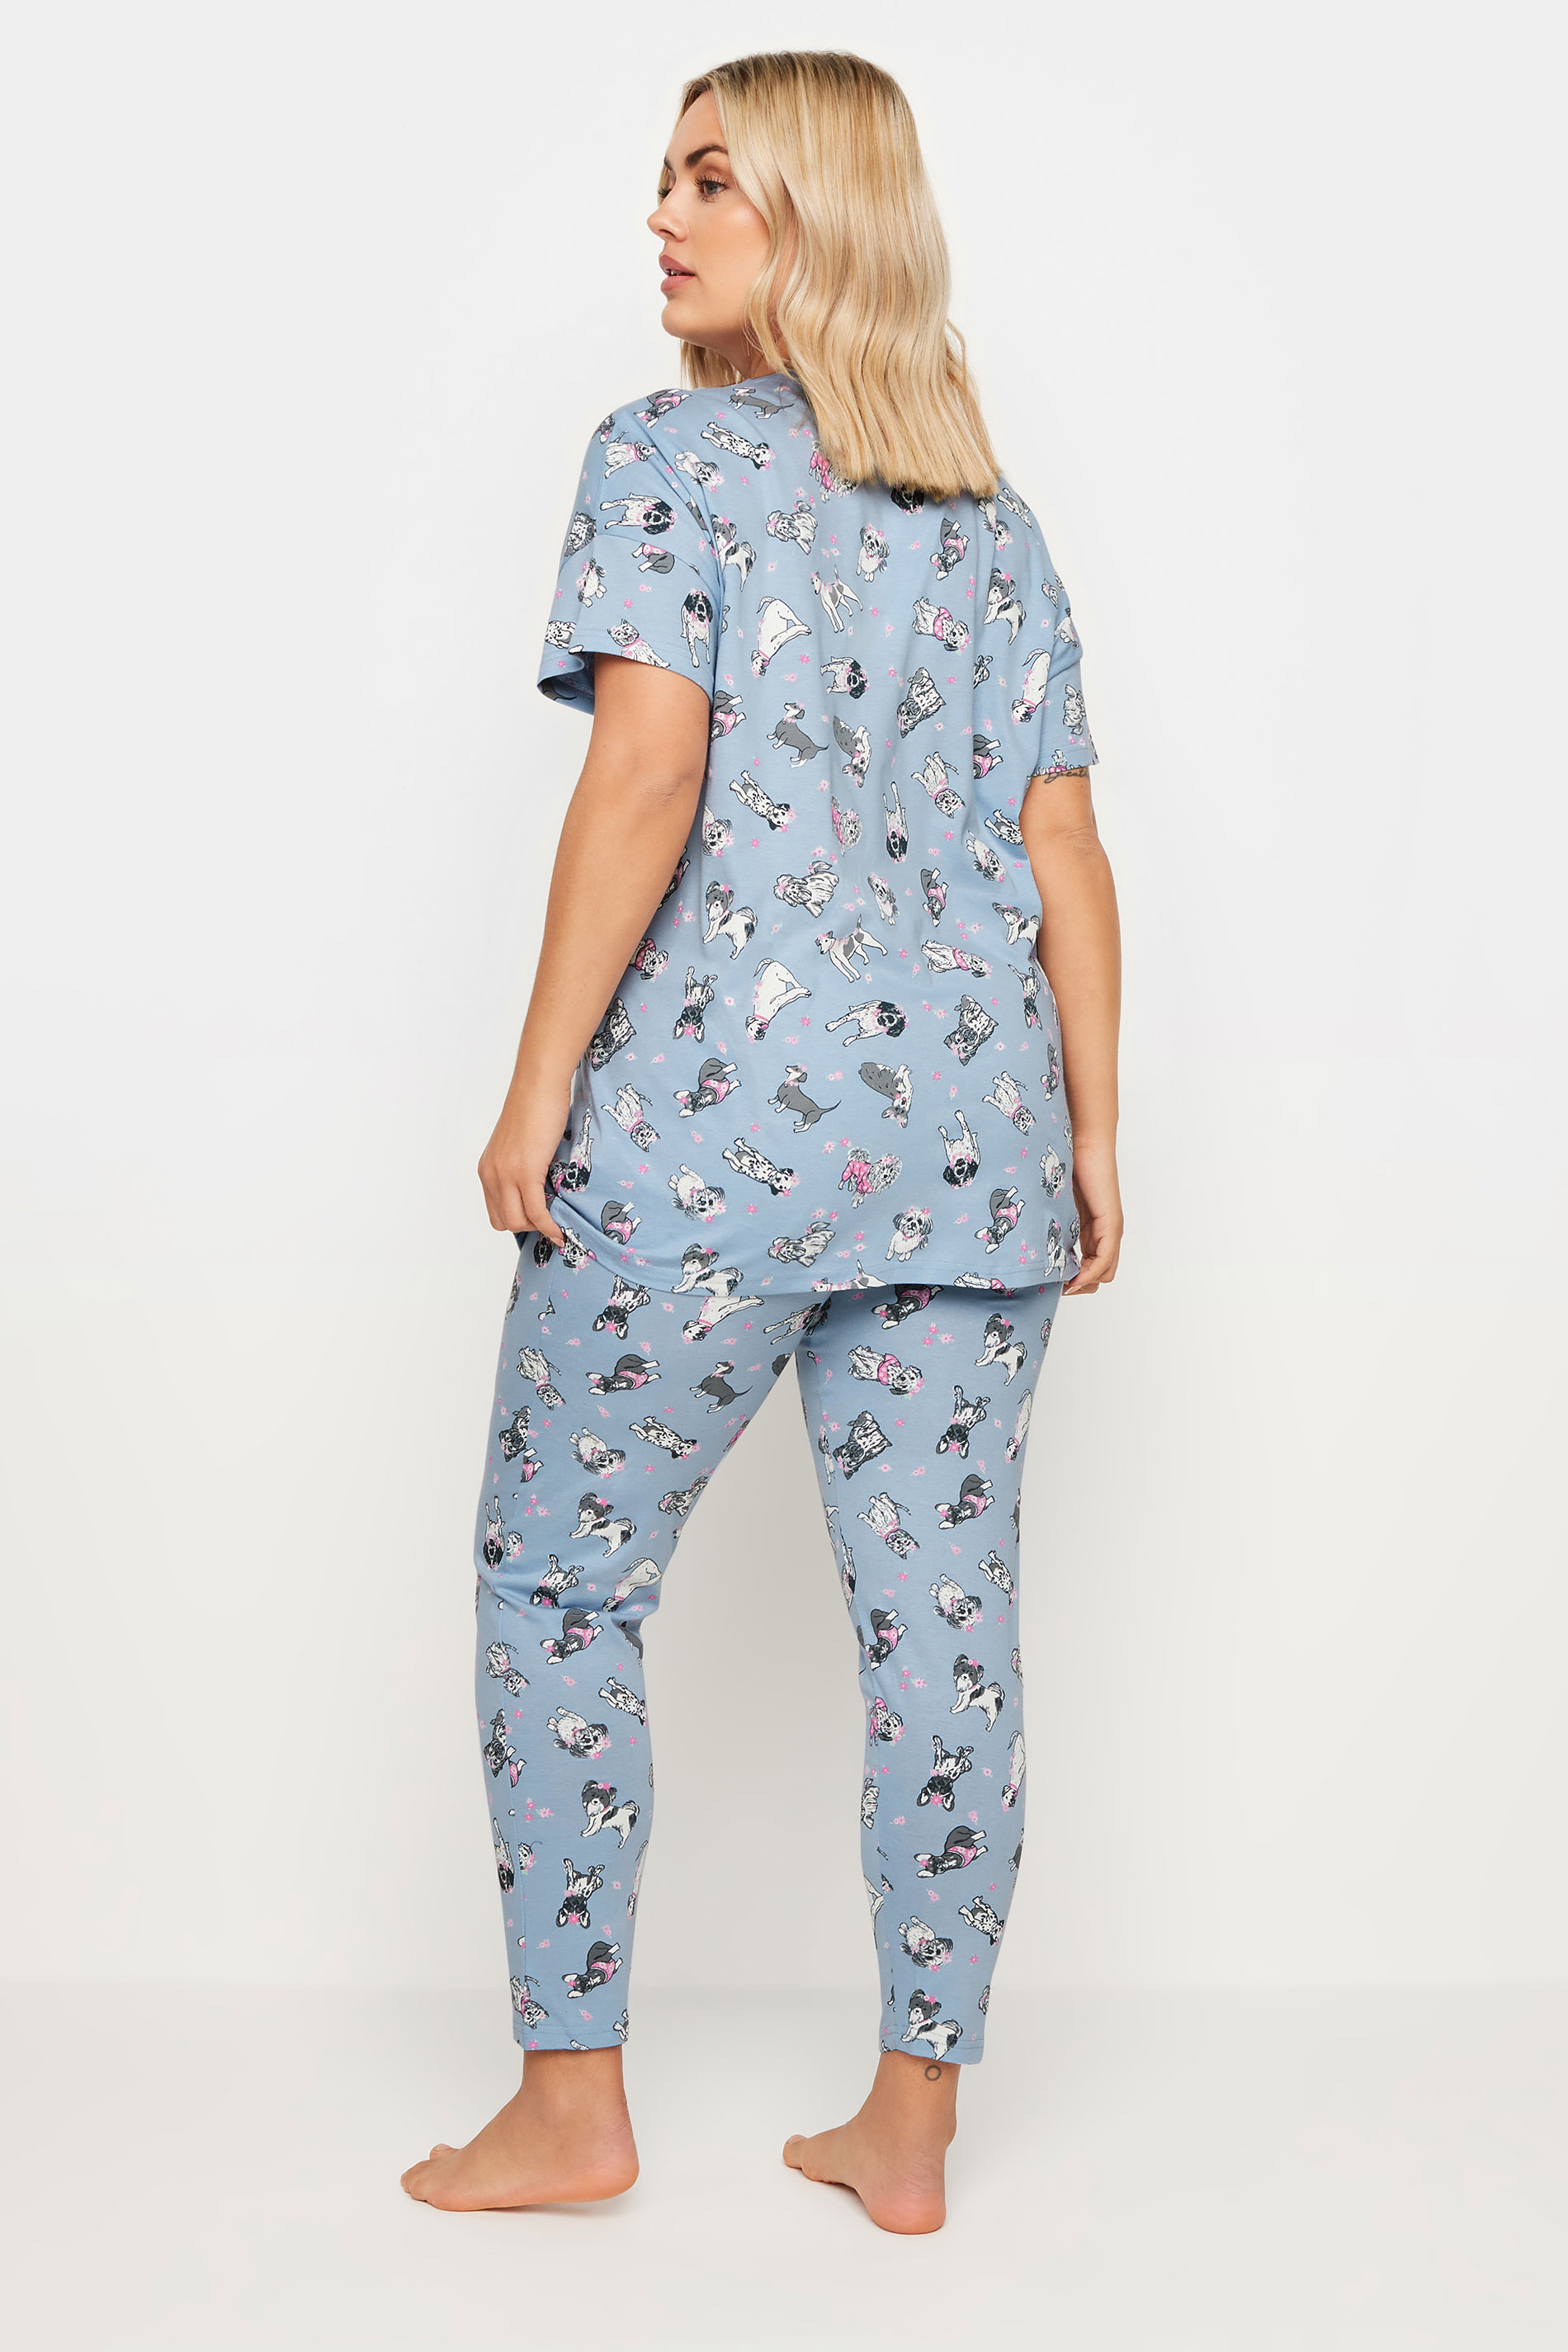 YOURS Plus Size Blue Dog Print Pyjama Set | Yours Clothing 3